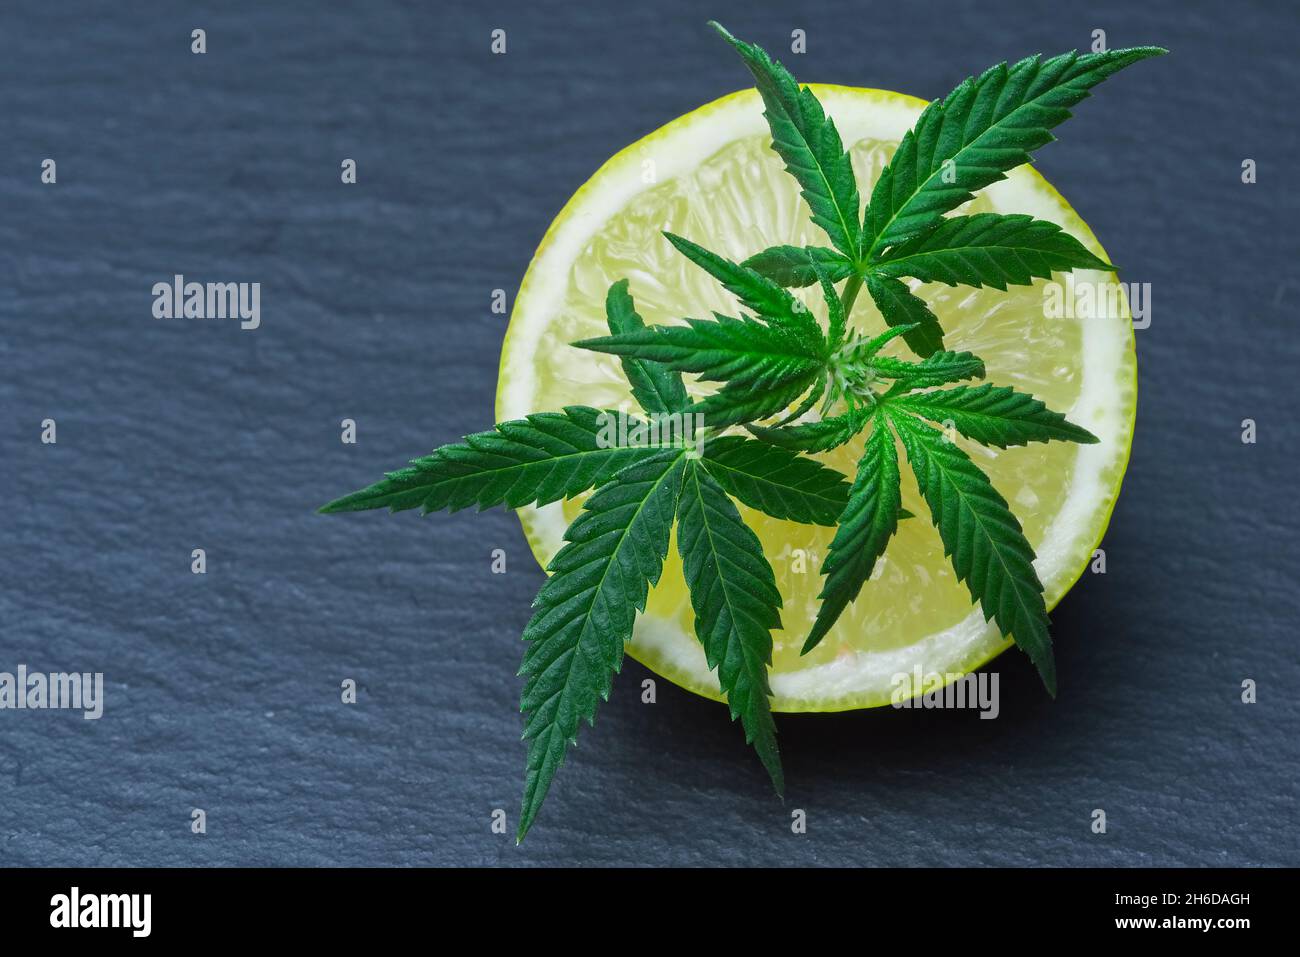 Ikonisches Cannabis hinterlassen auf einer geschnittenen Zitrone. Limonen-Terpene-Konzept auf grauem Hintergrund. Stockfoto